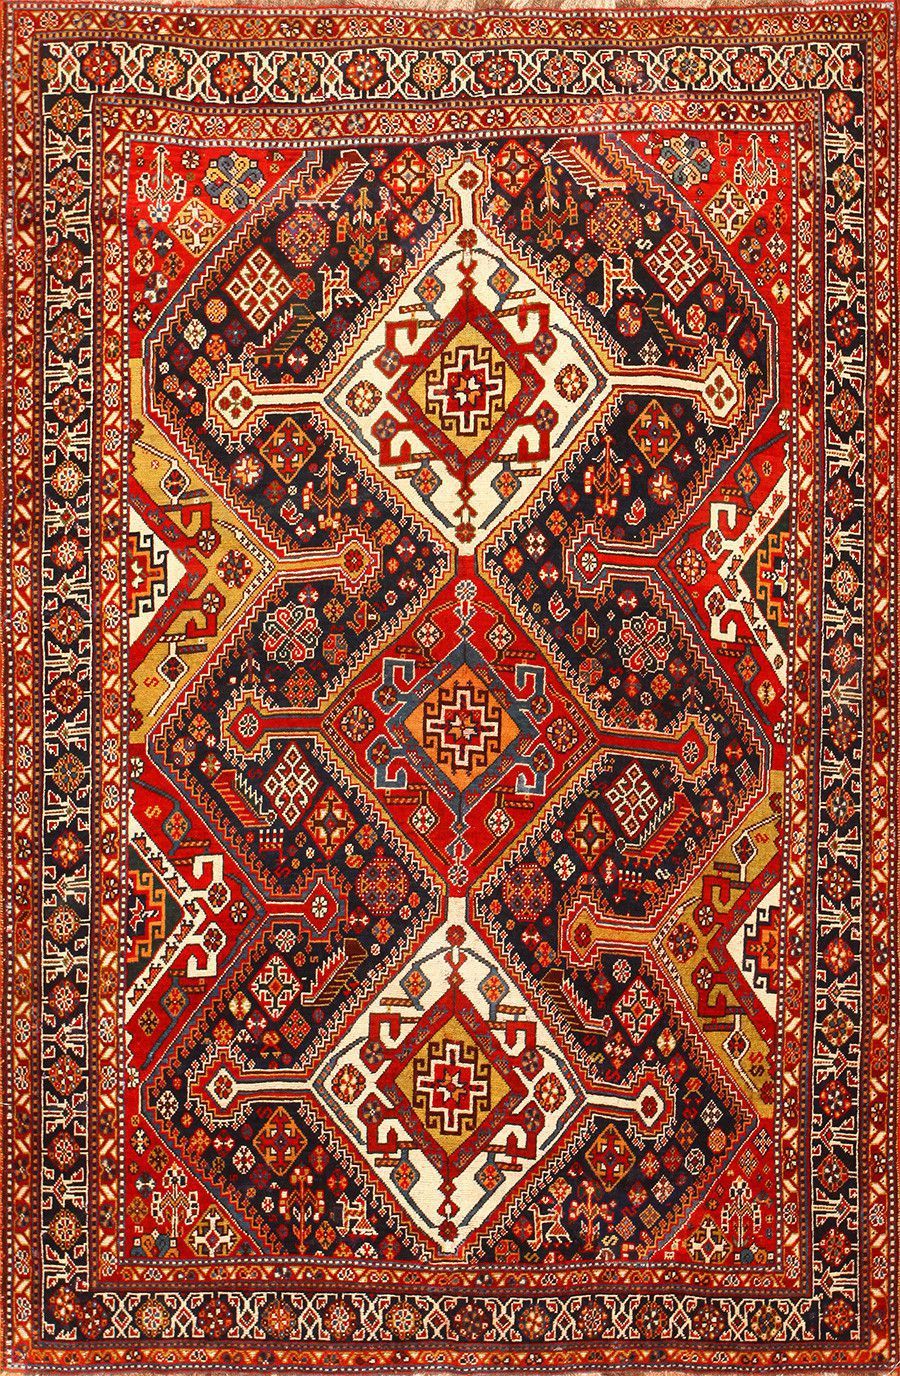 مهارت های سنتی قالی بافی فارس